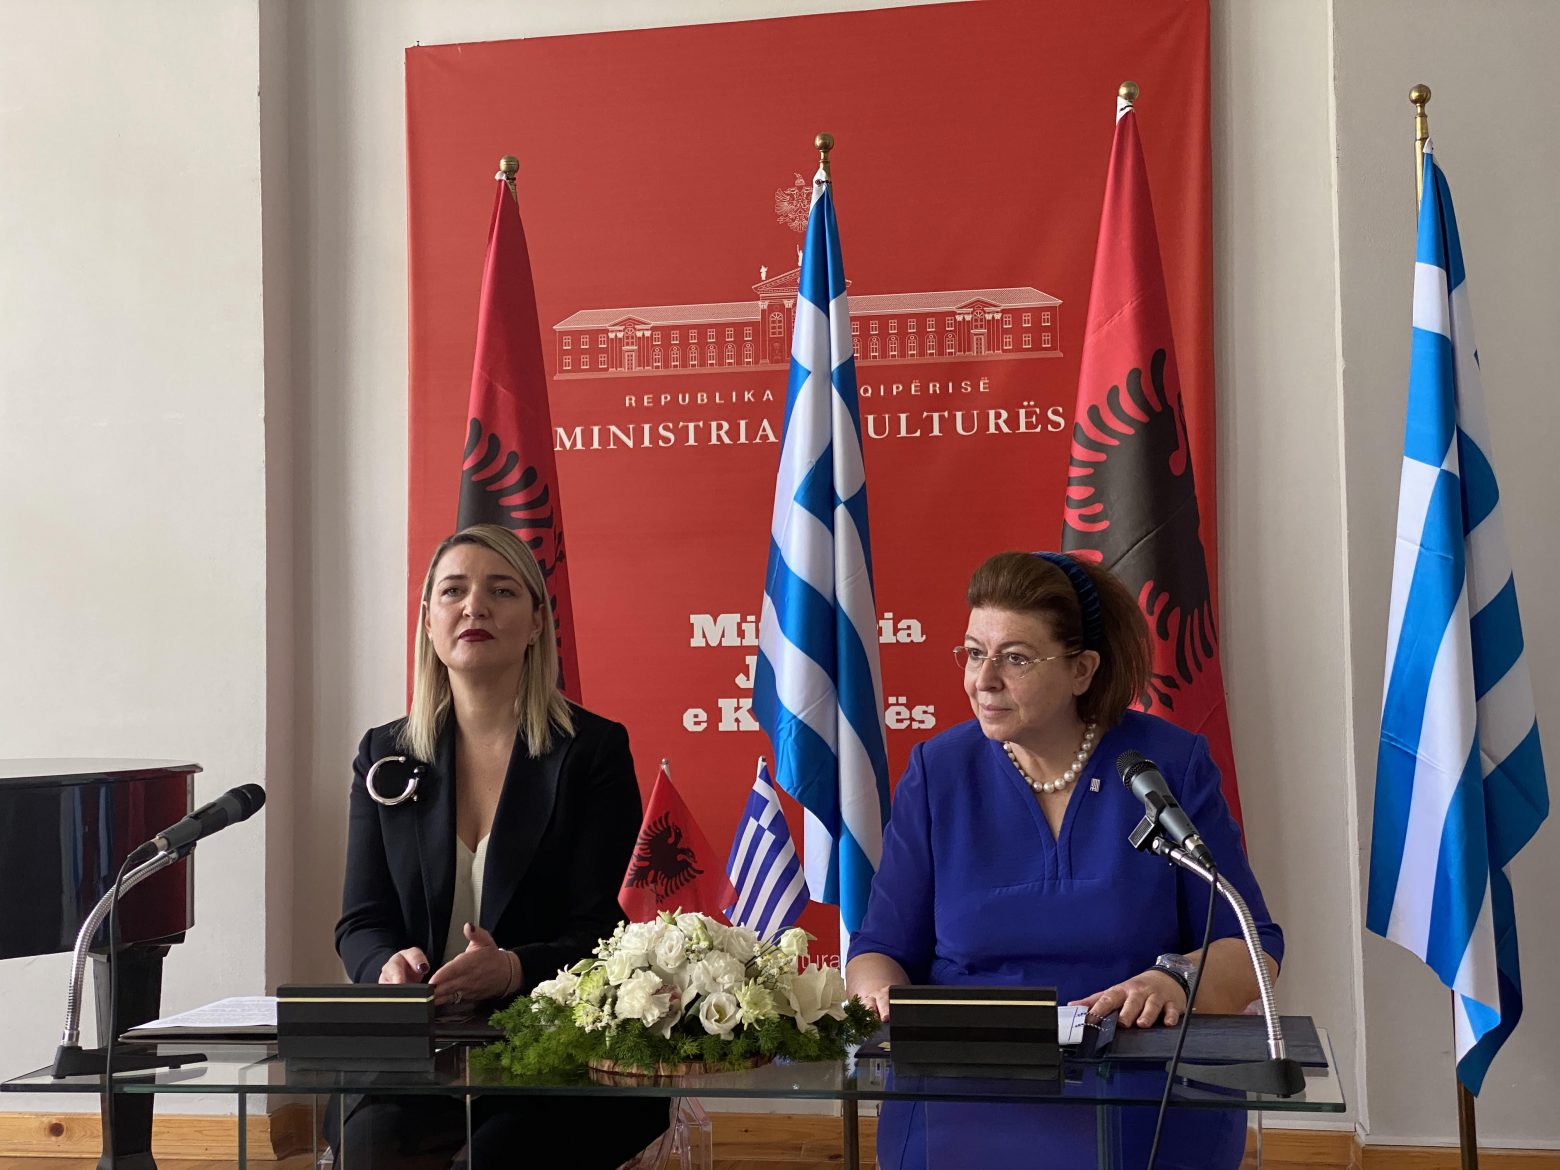 Μνημόνιο Συνεργασίας Ελλάδας - Αλβανίας για την προστασία και ανάδειξη μνημείων και αρχαιολογικών χώρων στην Αλβανία